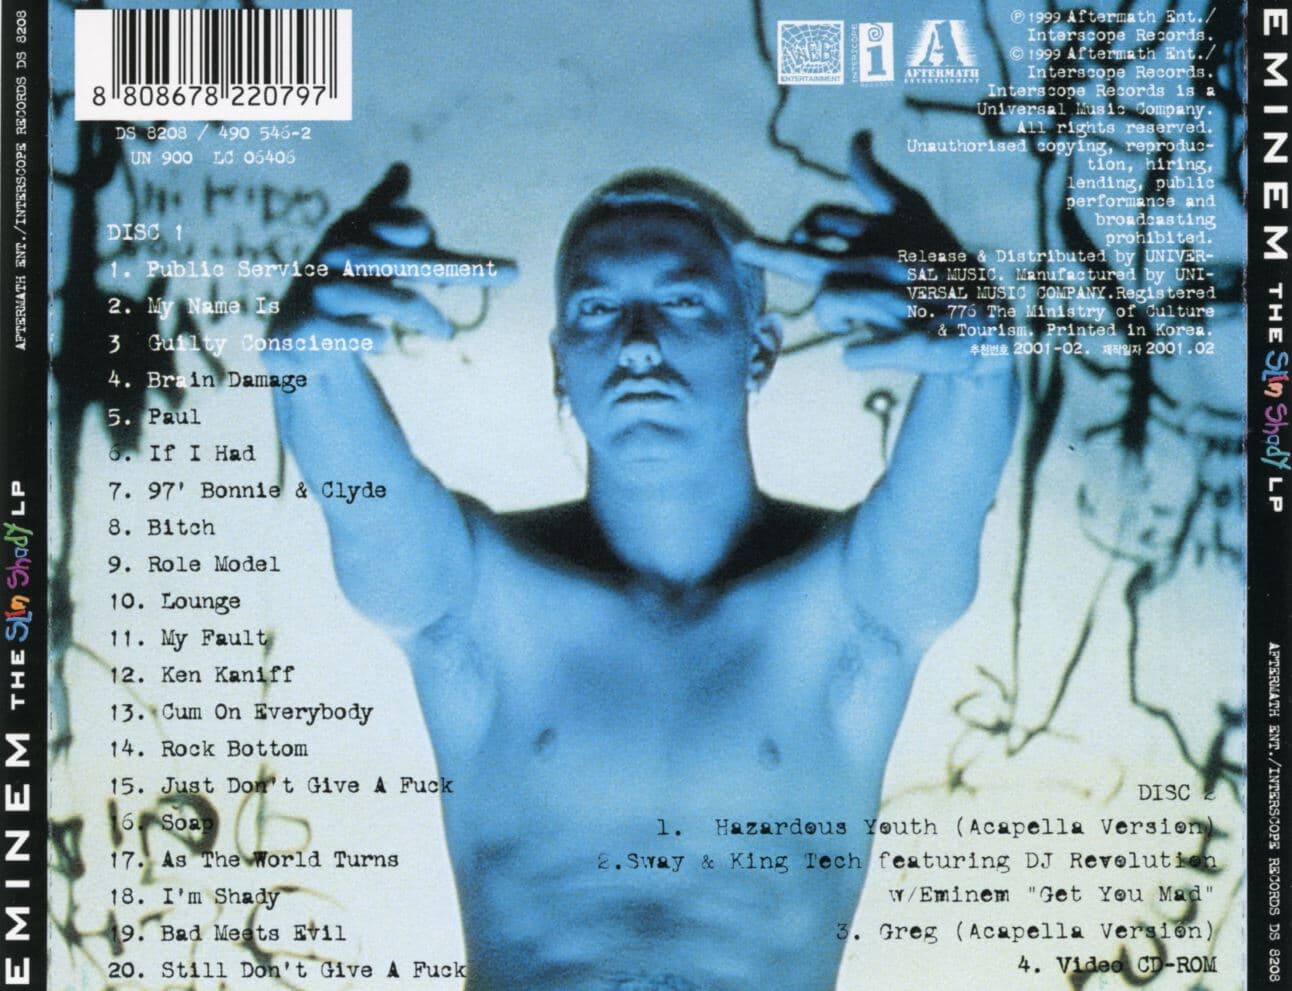 에미넘 - Eminem - The Slim Shady LP Special Edition CD 2Cds